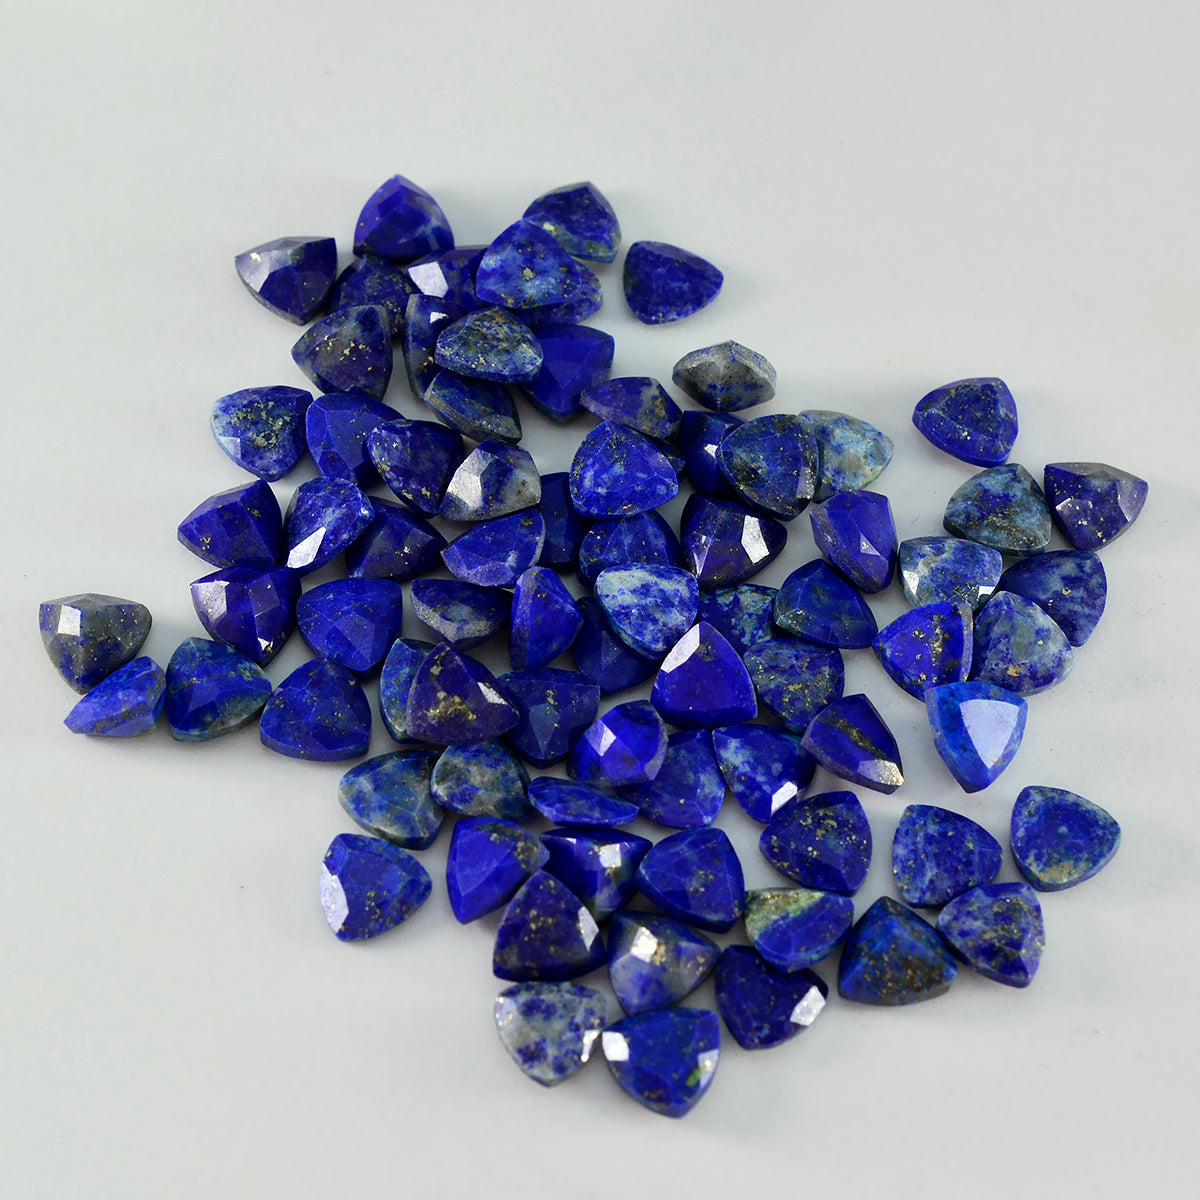 riyogems 1 шт. натуральный синий лазурит ограненный 5x5 мм форма триллиона драгоценный камень превосходного качества